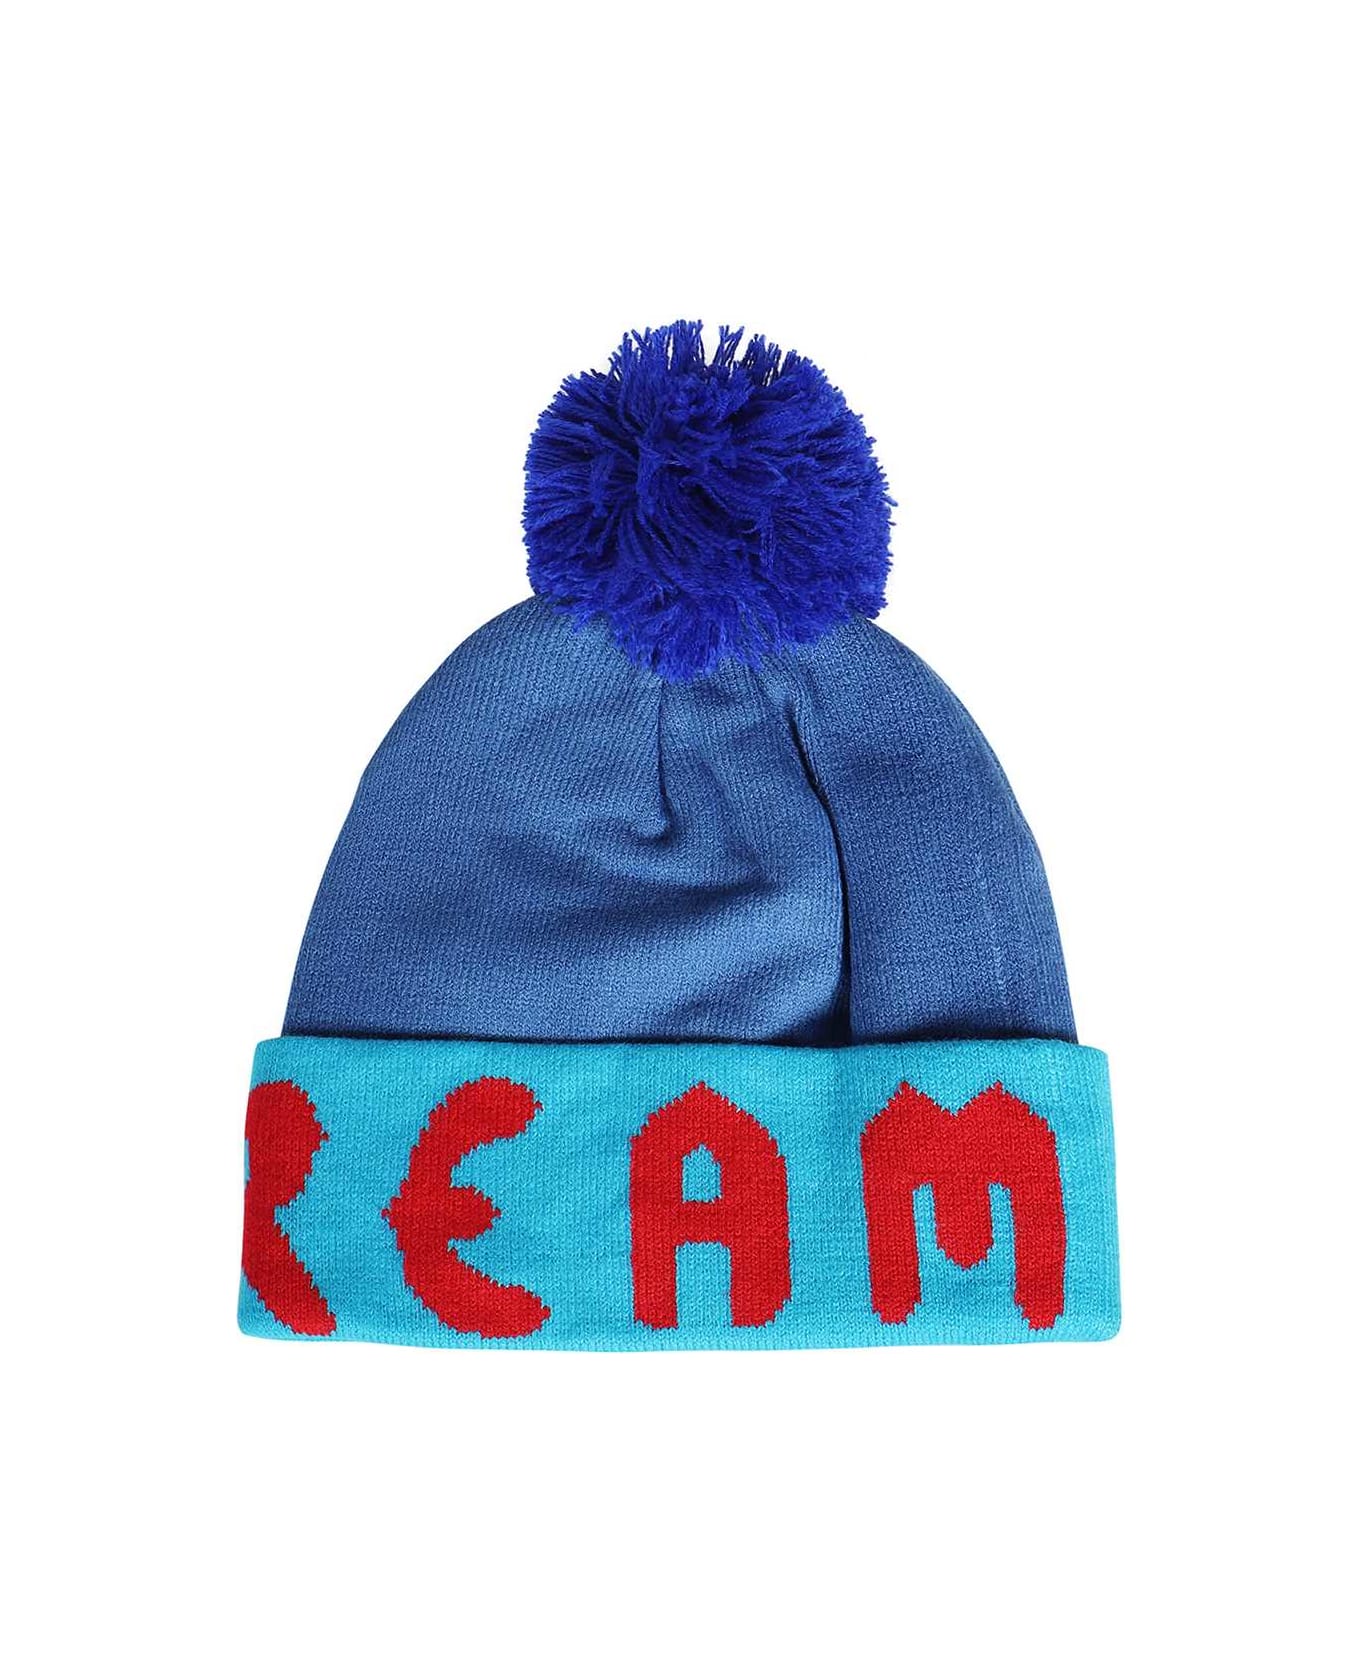 Icecream Knitted Wool Beanie With Pom-pom - blue